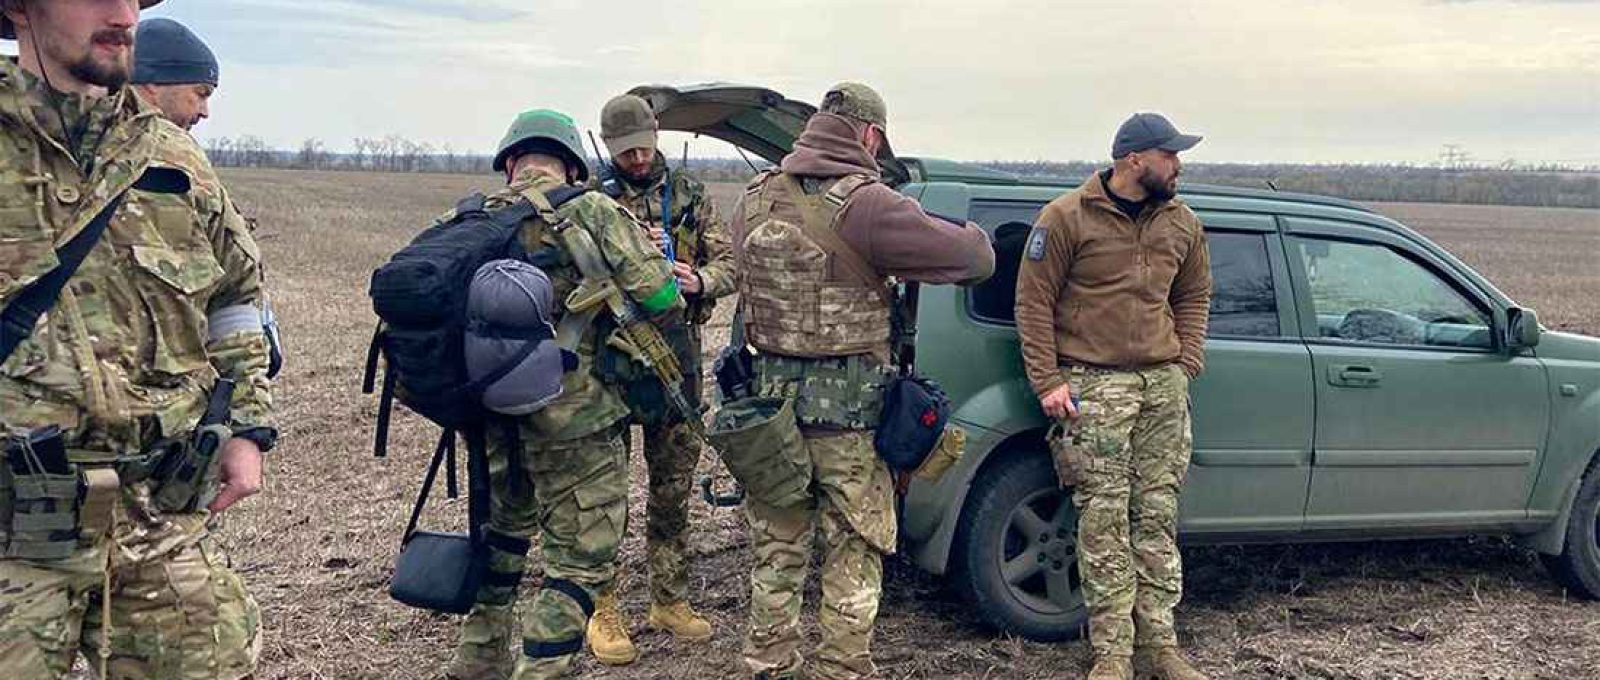 Tropas de operações especiais ucranianas treinam com pessoal do Grupo Mozart
(Cortesia de Andrew Milburn via NBC News).